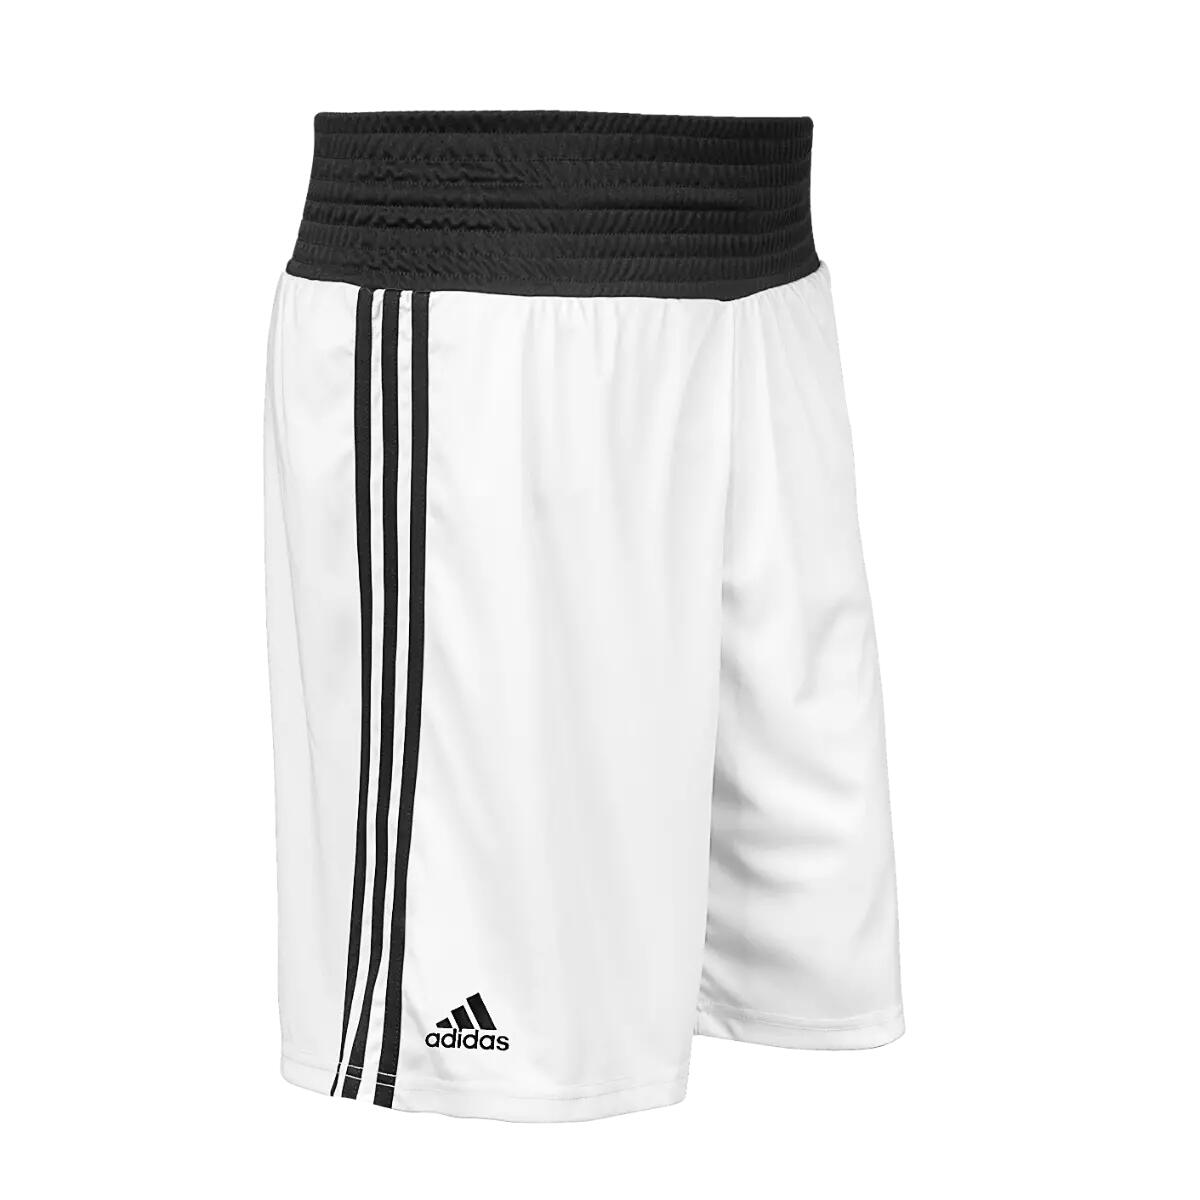 Adidas Base Boxing Shorts - White 1/2